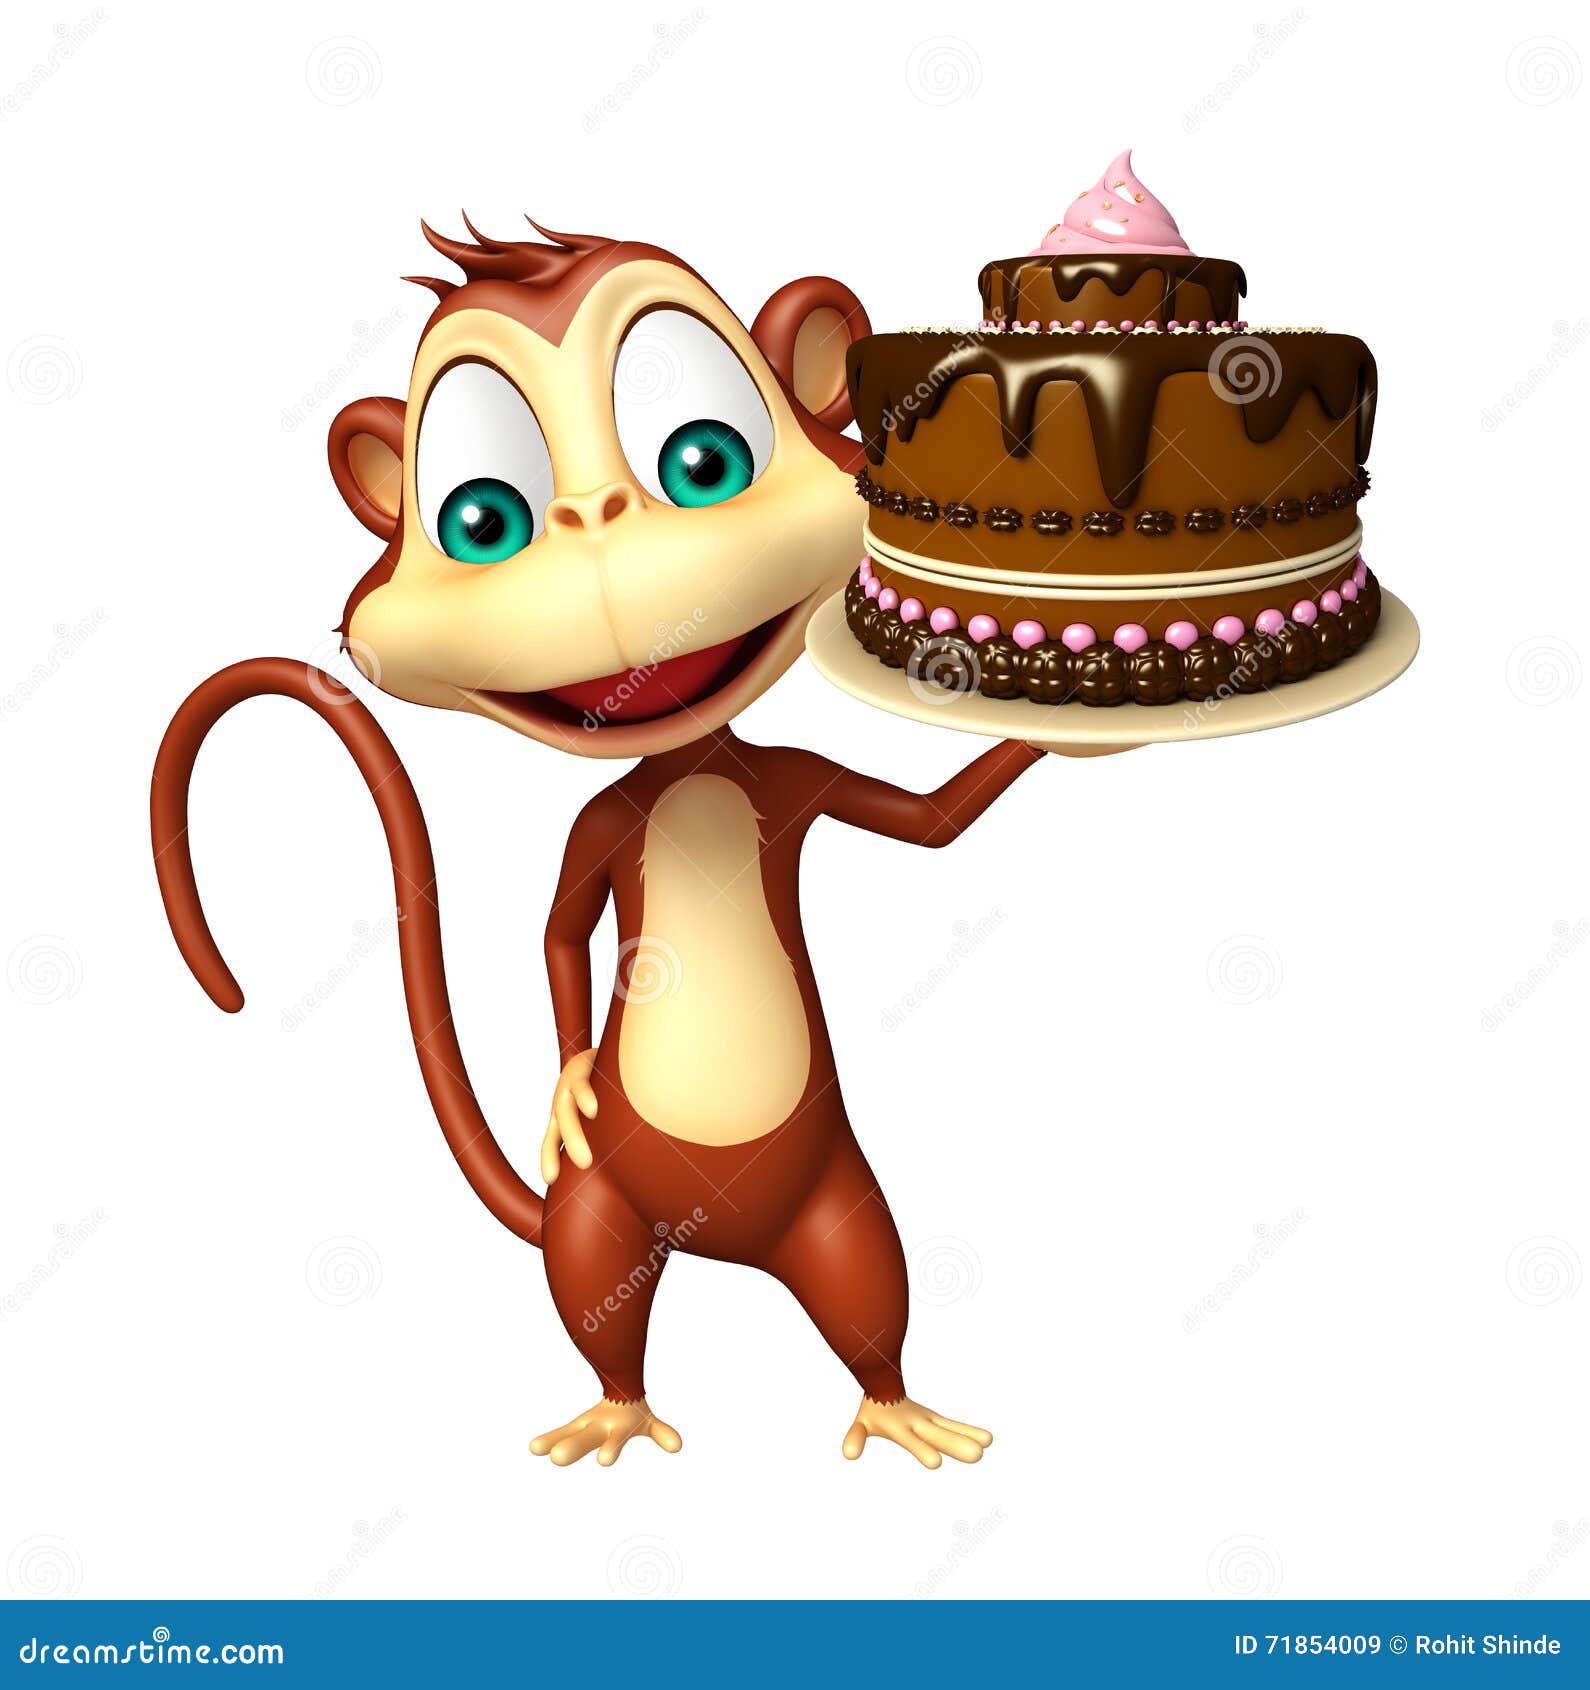 小猴子蛋糕图片最新-图库-五毛网